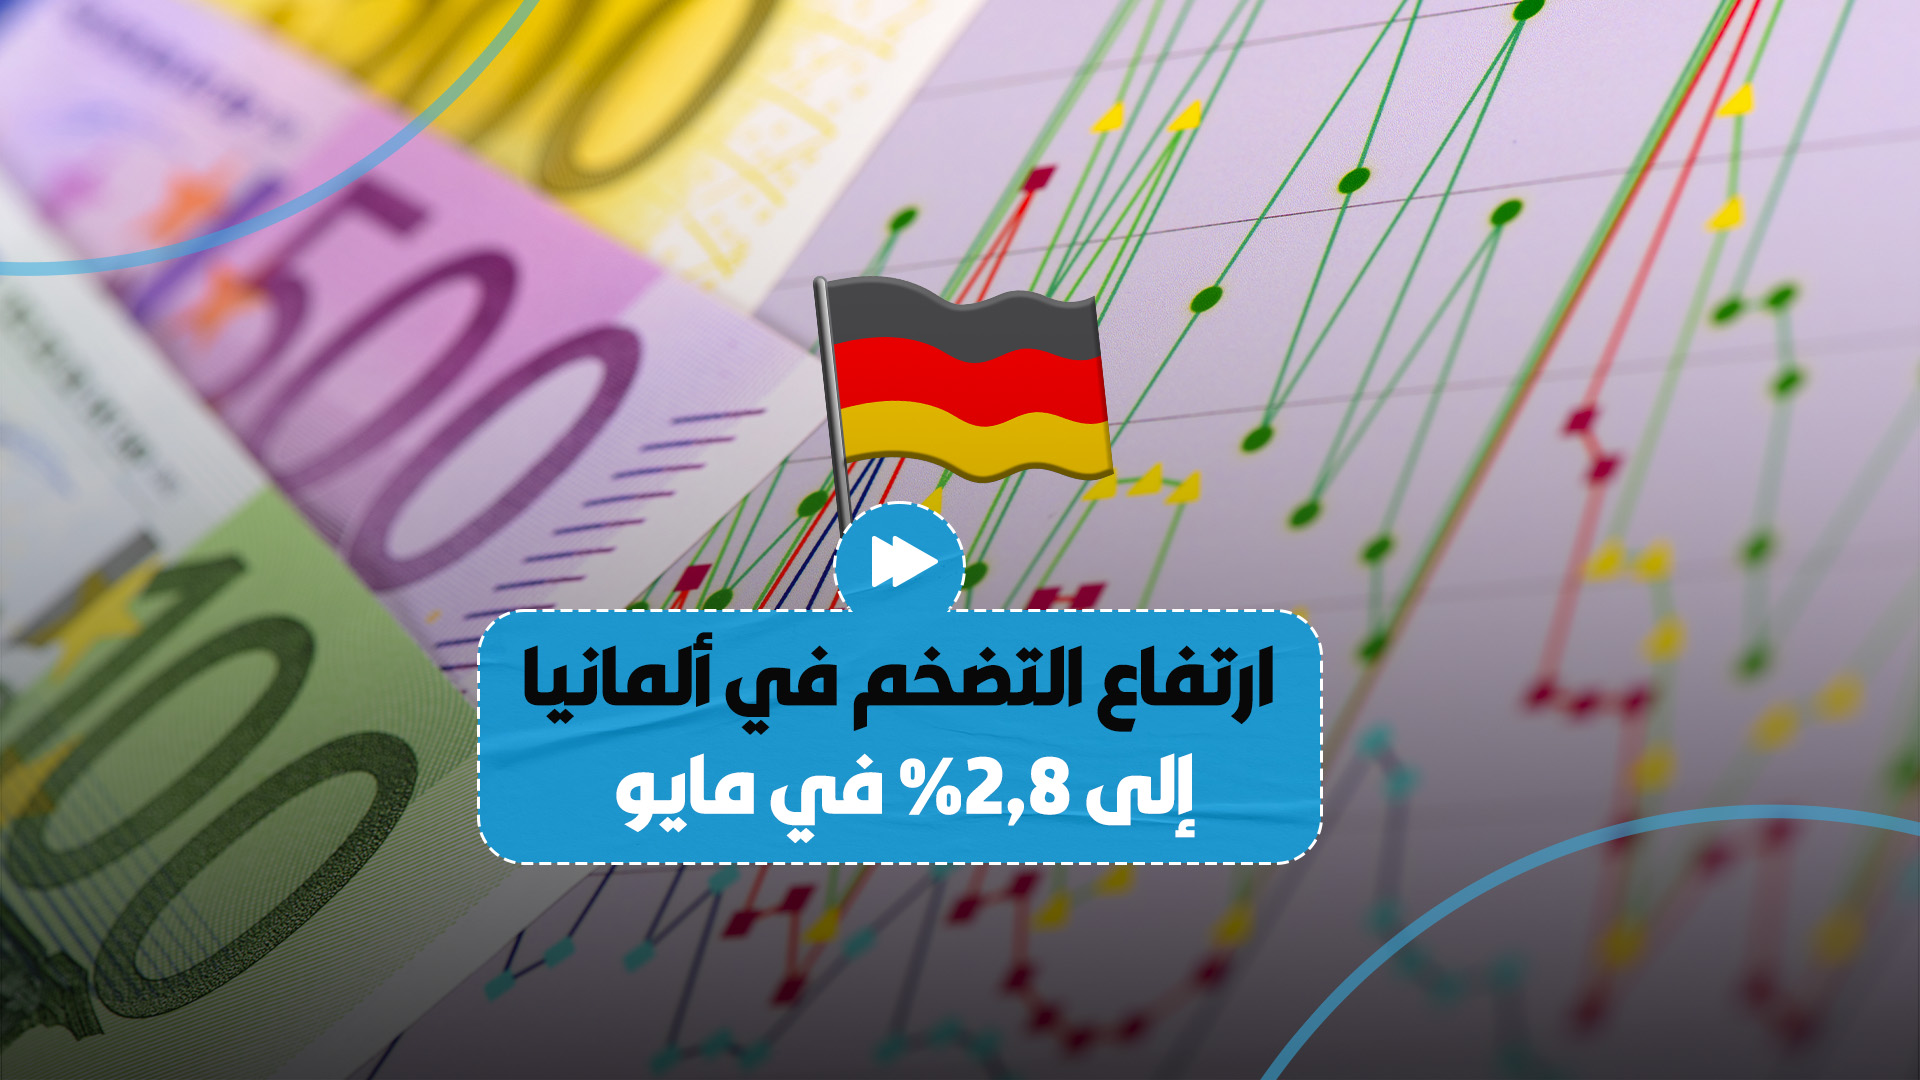 "تجاوز التوقعات".. ارتفاع التضخم في ألمانيا إلى 2.8%.. تعرّف على التفاصيل!